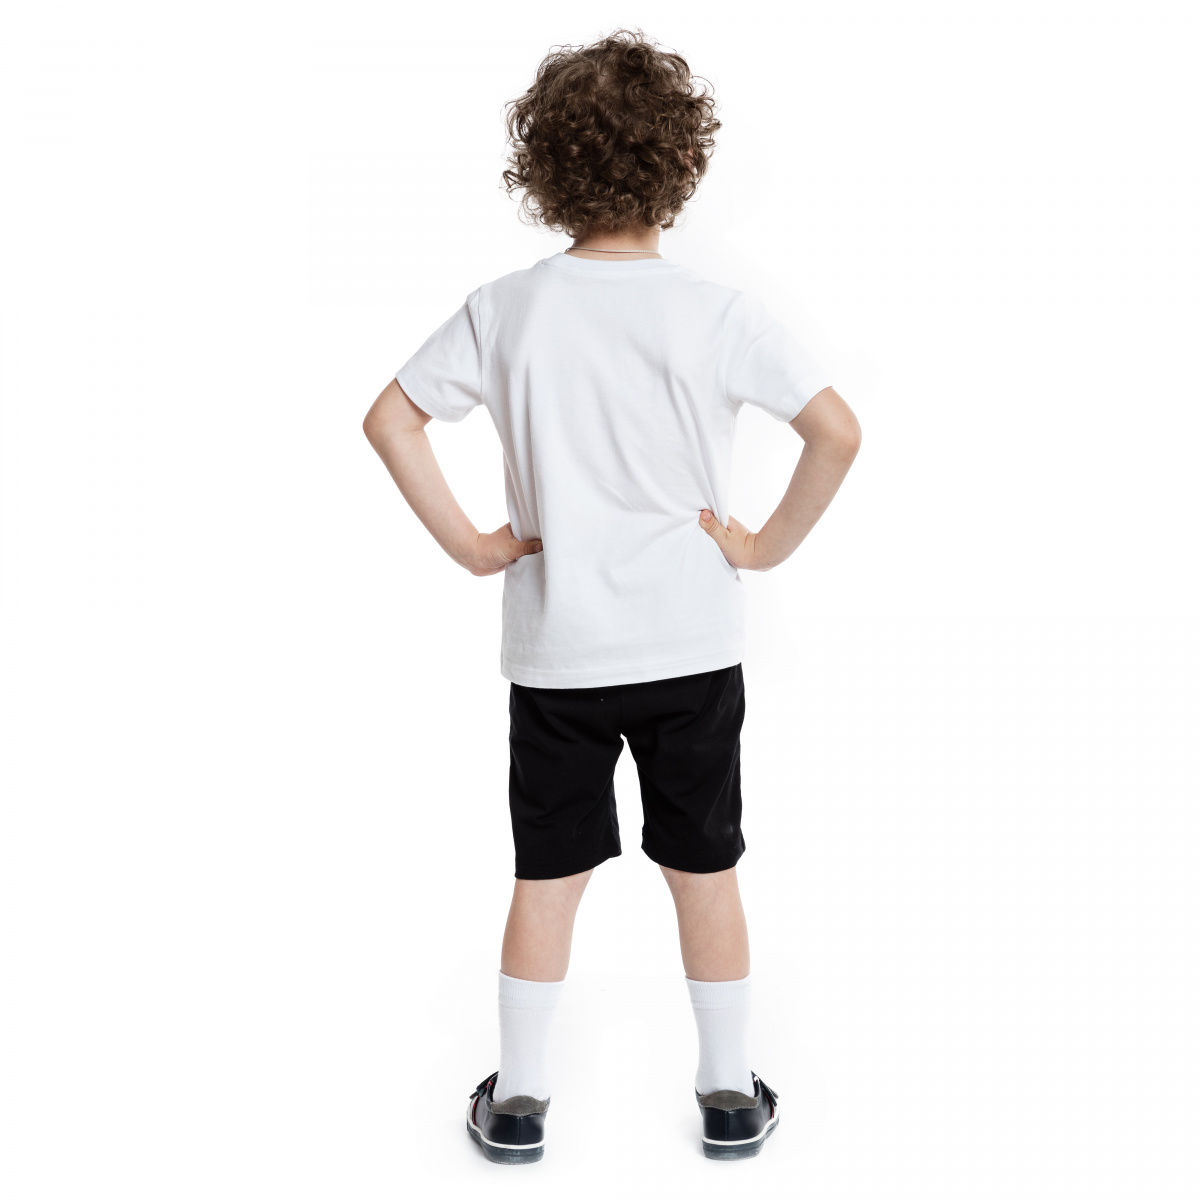 Спортивная форма шорты и футболка. Спортивные шорты для мальчика. Черные шорты и белая футболка для мальчиков. Белая футболка и черные шорты.